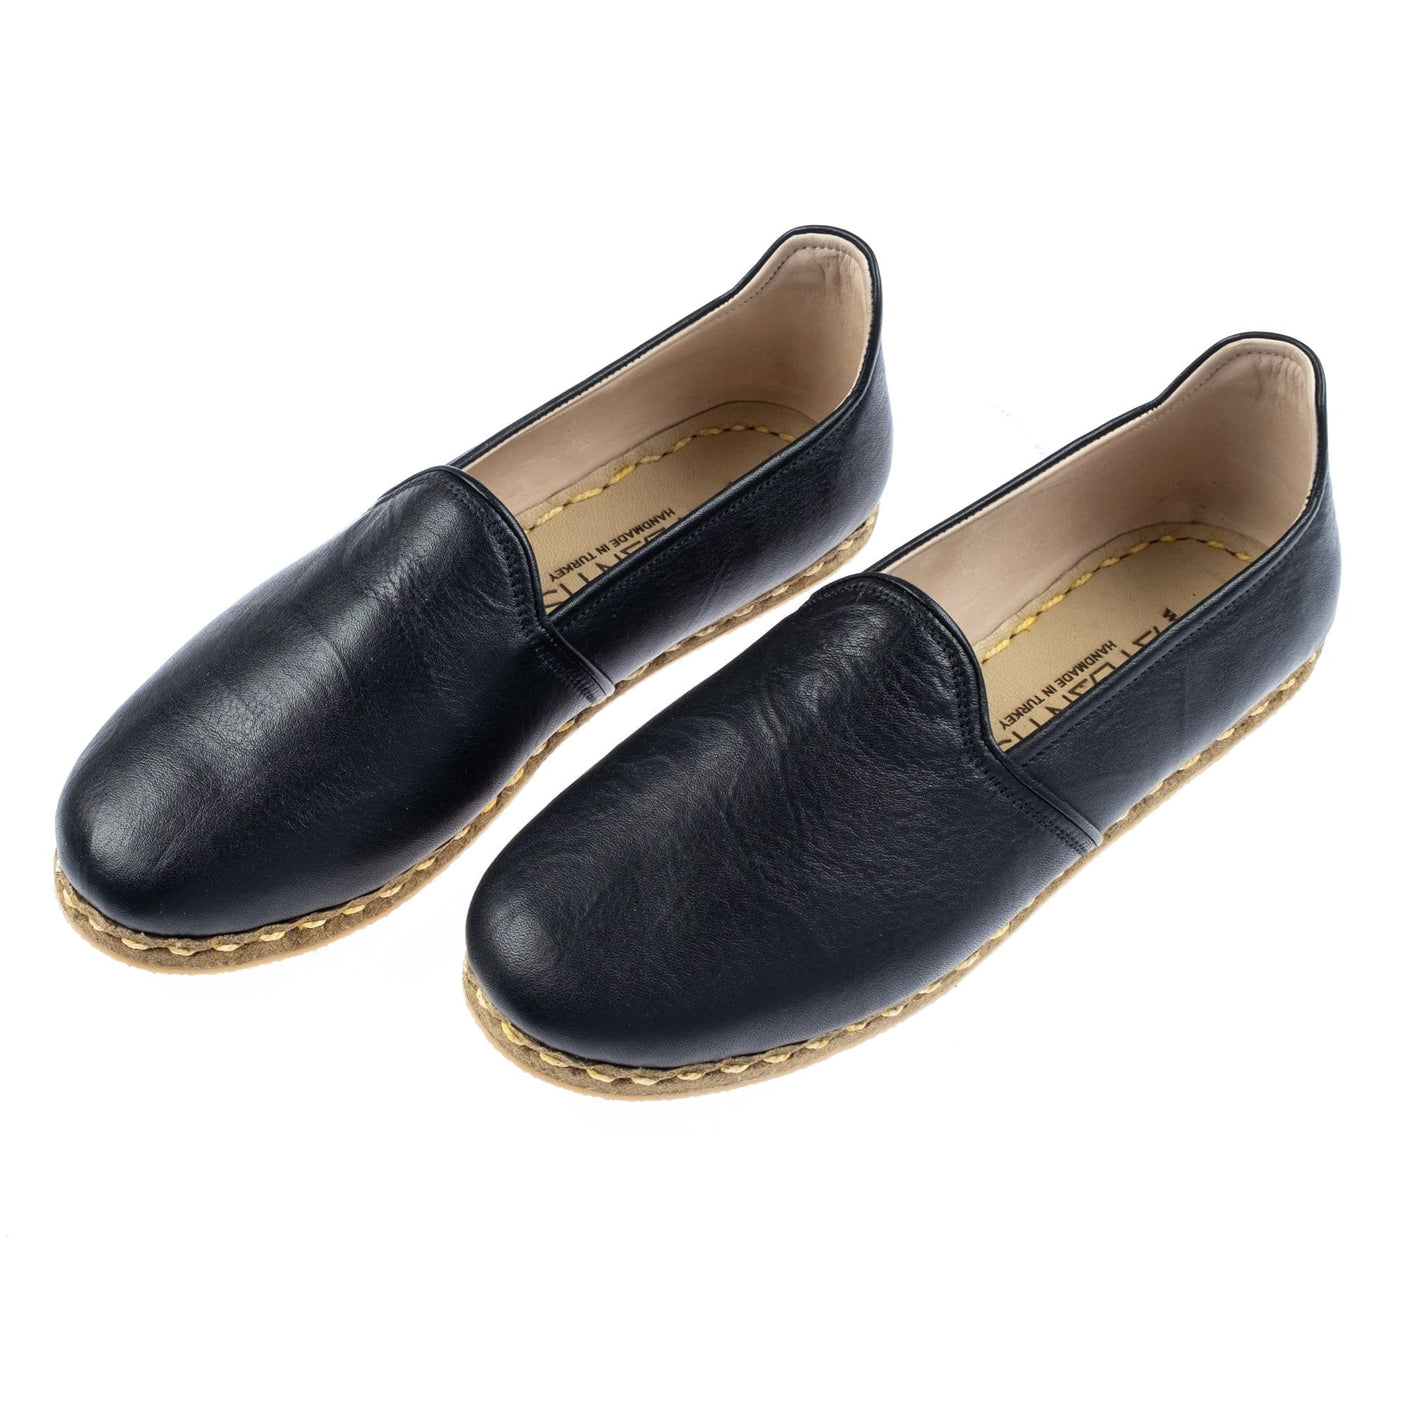 Men's Wrinkled Black Slip On Shoes